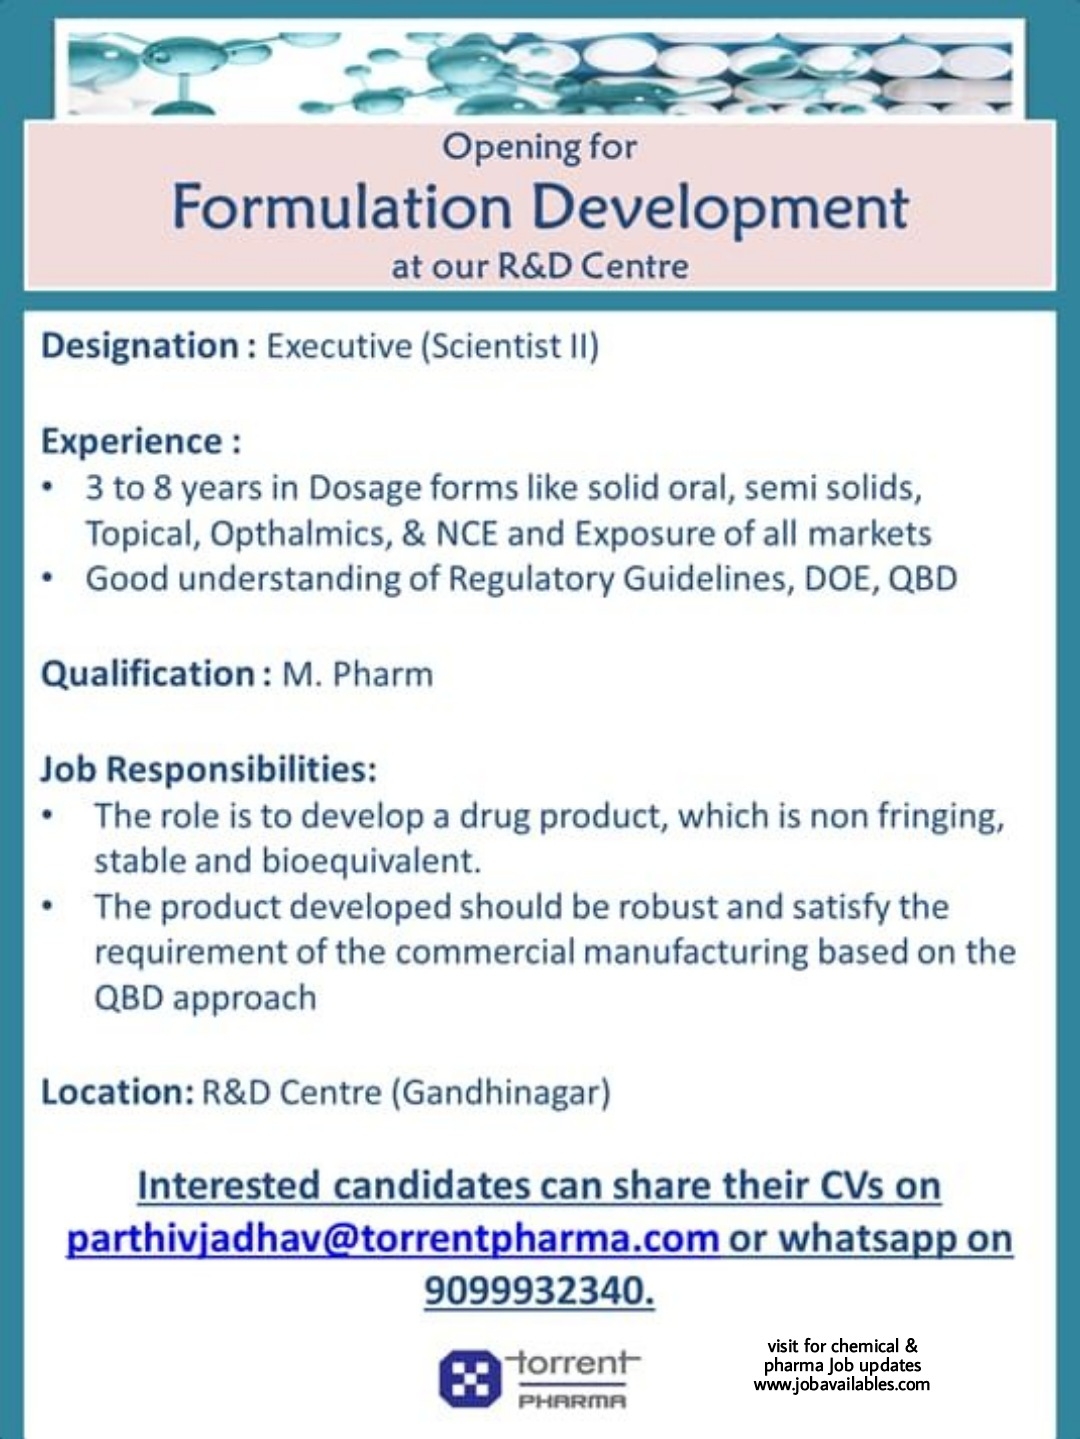 Job Availables, Torrent Pharma Job Opening For M.Pharma-Formulation Development